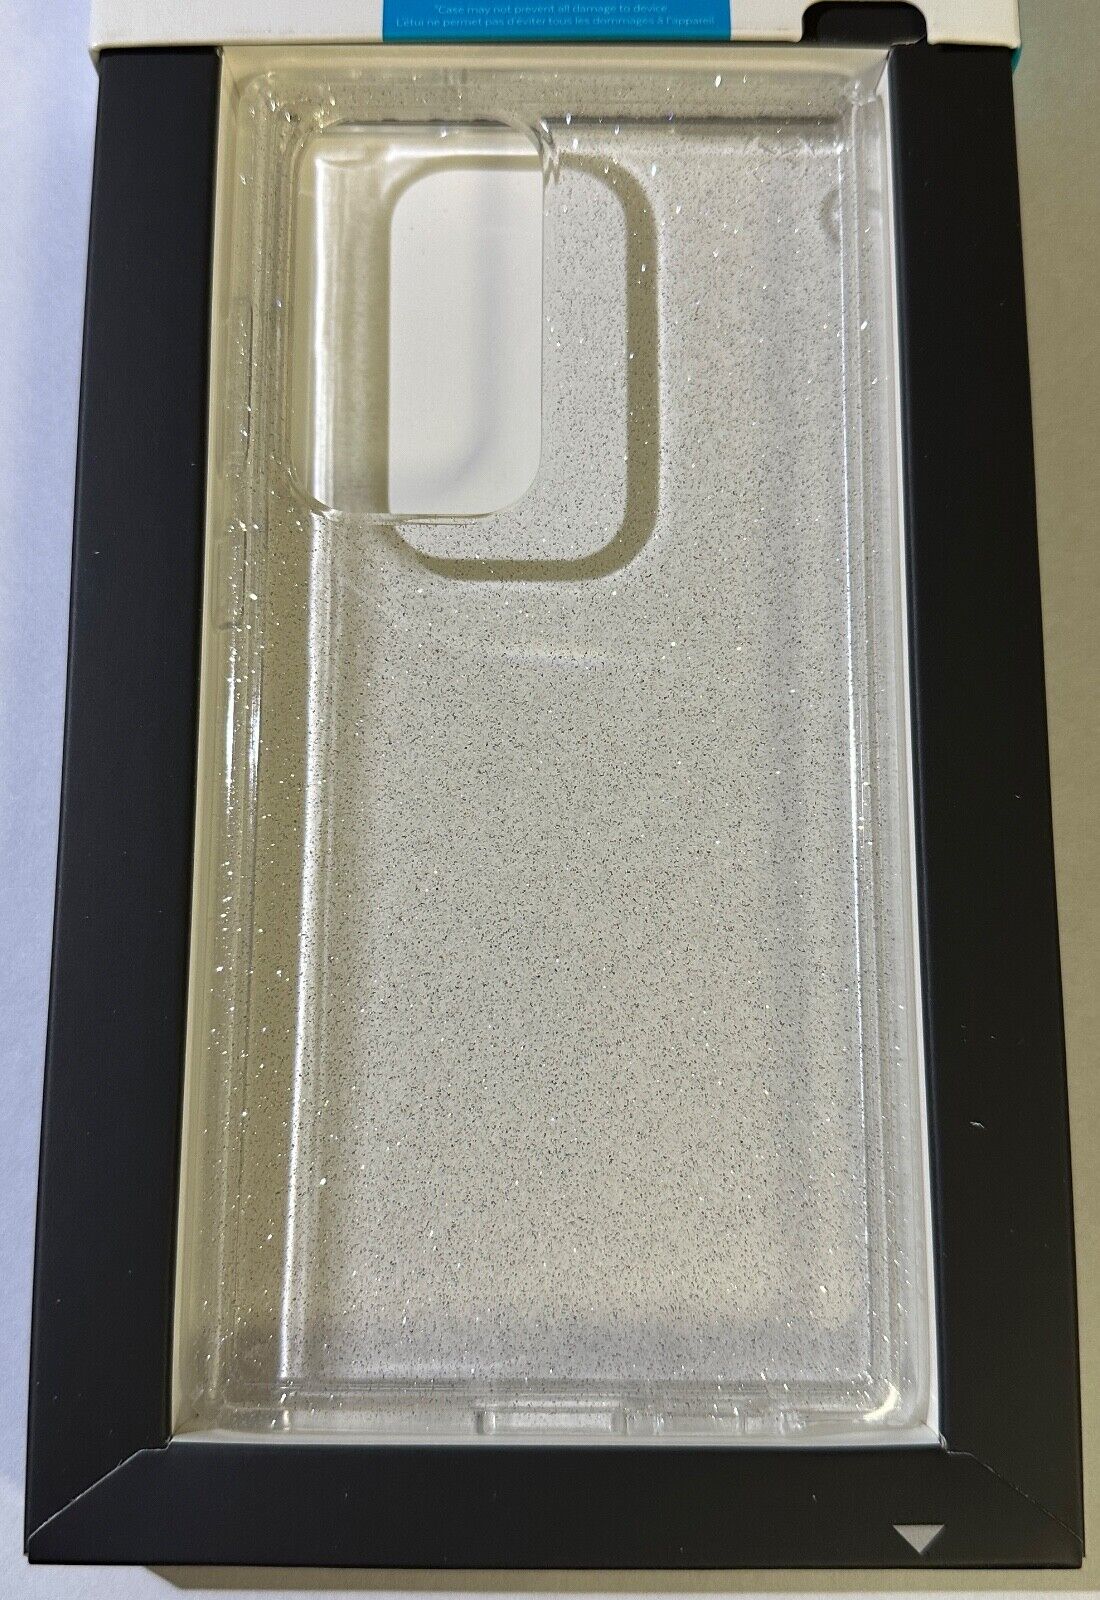 NEW Speck Presidio Perfect-Clear w/ Glitter case for Samsung Galaxy S23 Ultra